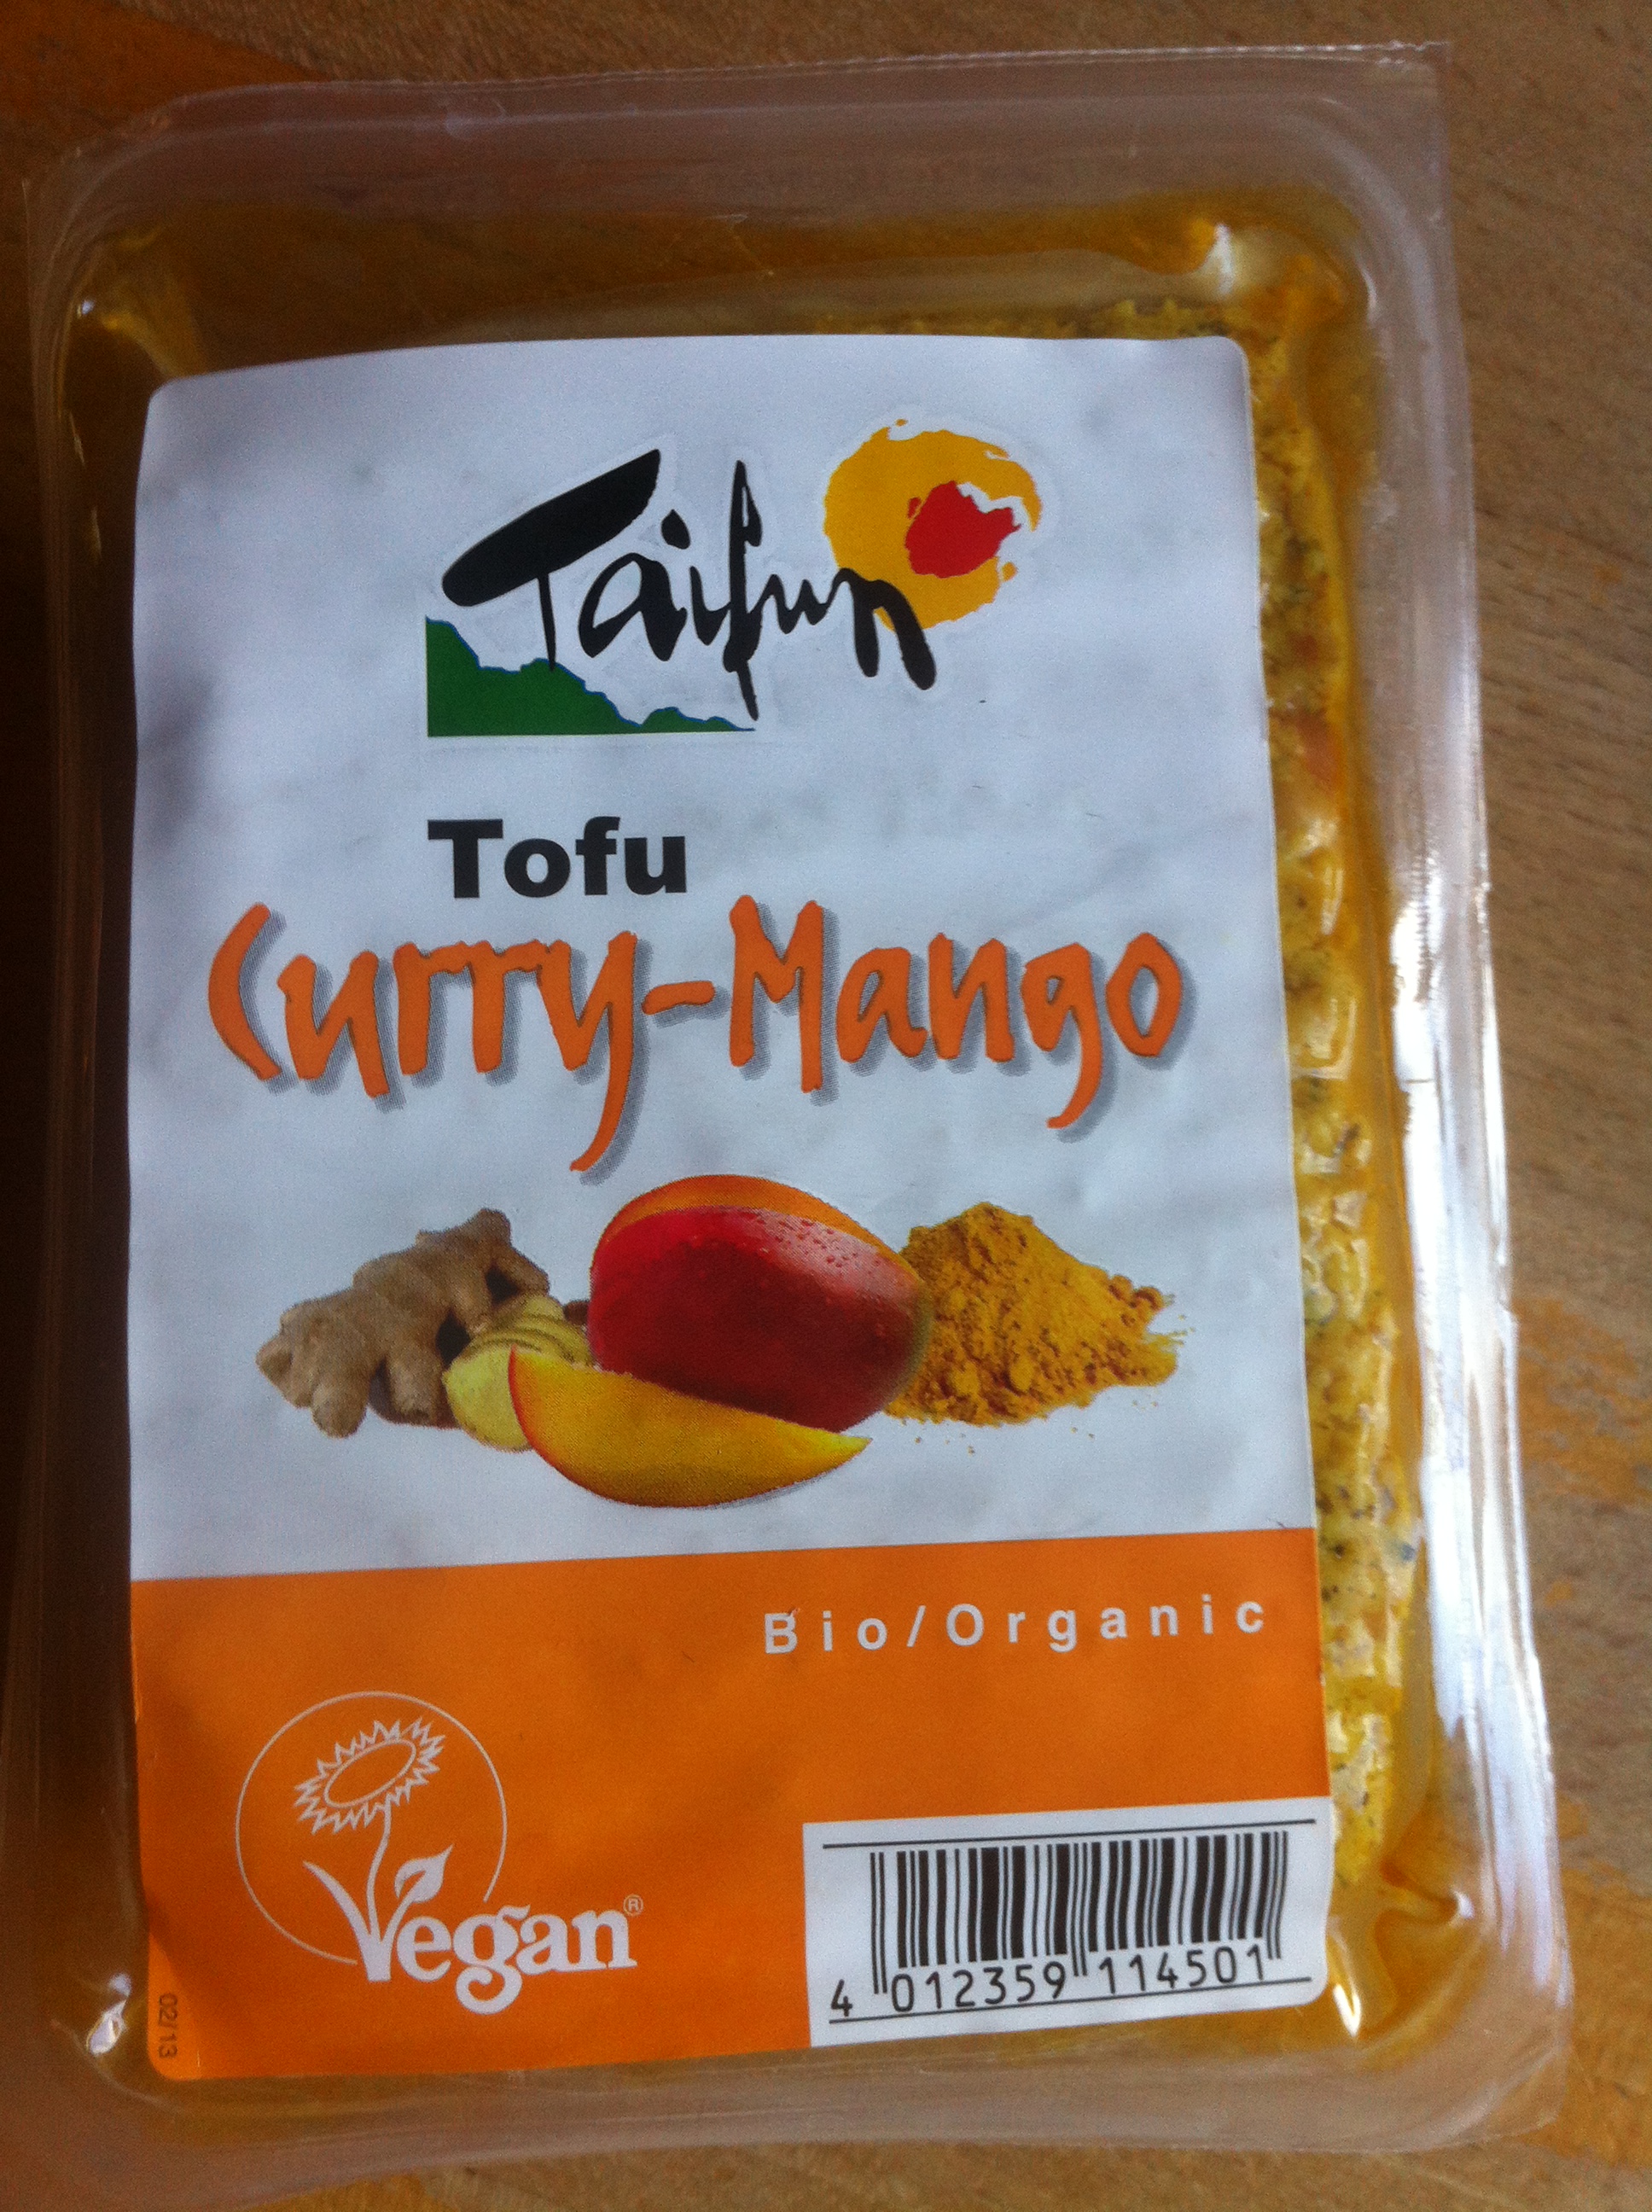 Neu von Taifun

Tofu - Curry-Mango